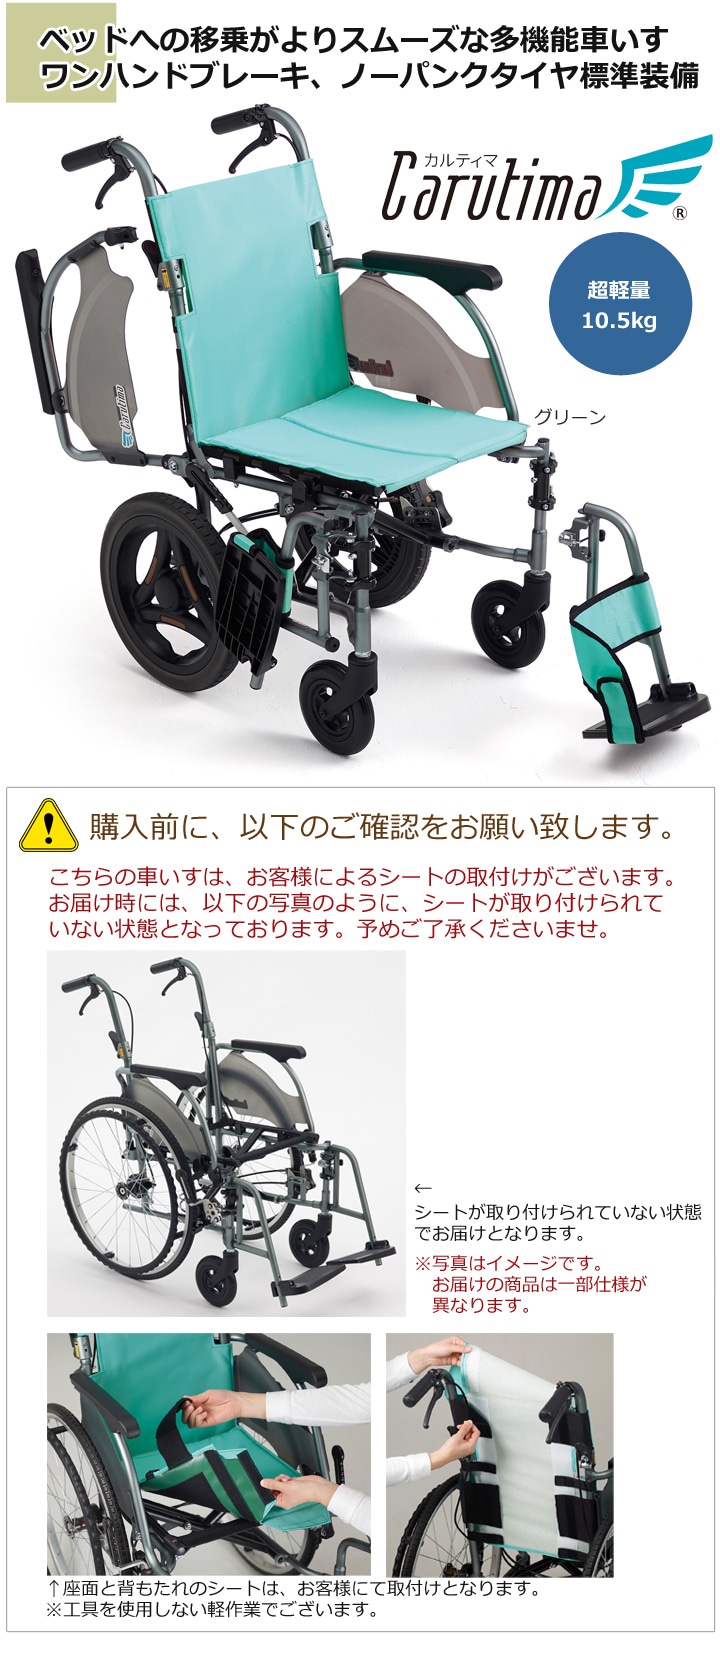 Miki カルティマ CRT-8 介助用 超軽量コンパクト ノーパンク 車椅子説明書